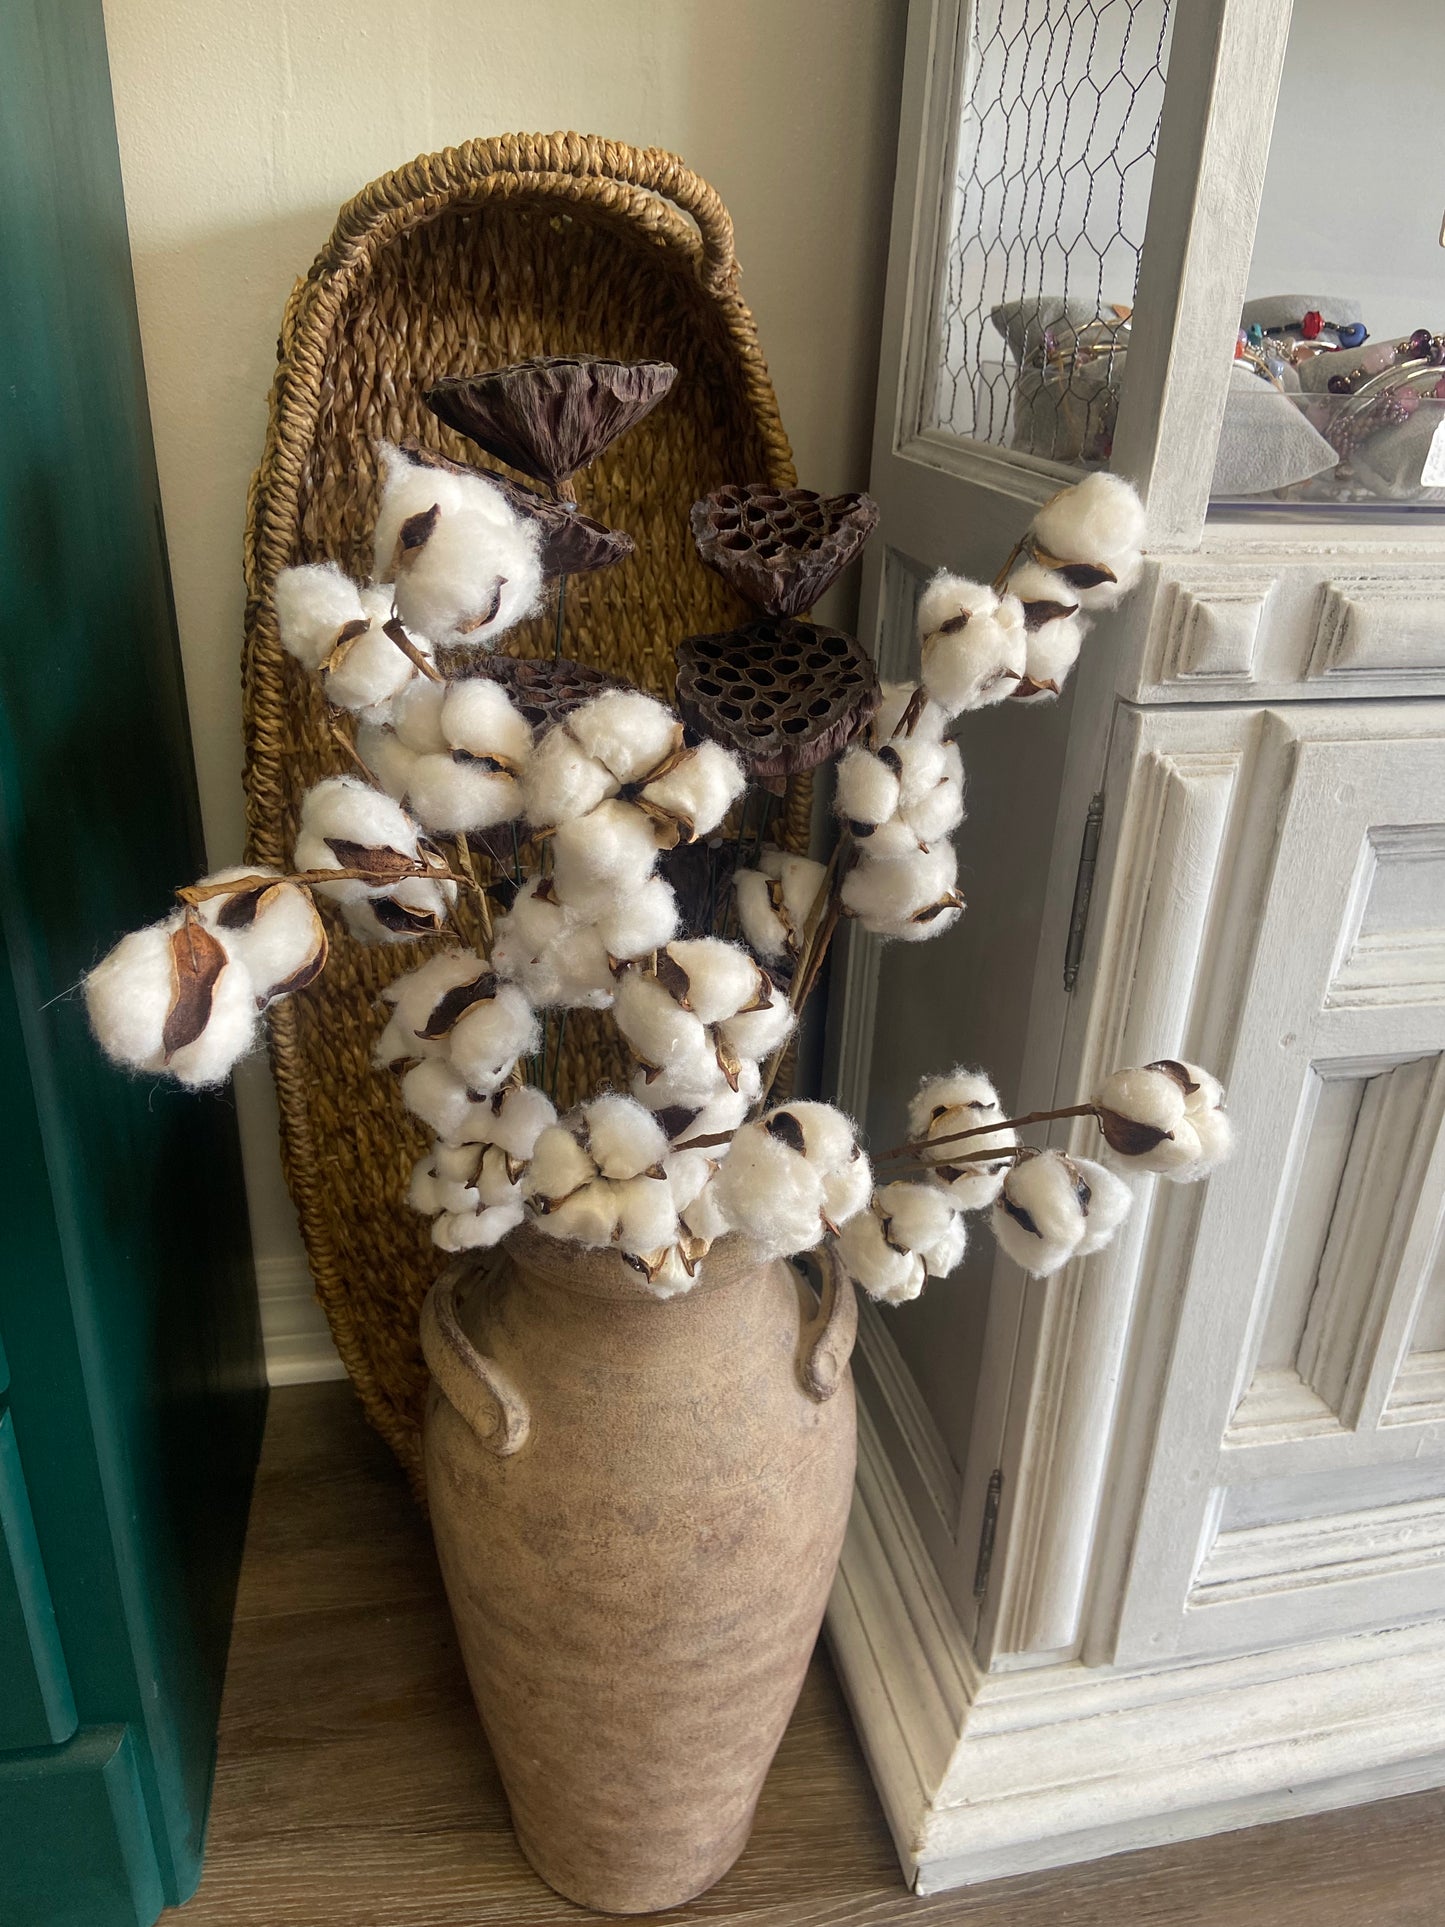 Cotton stems